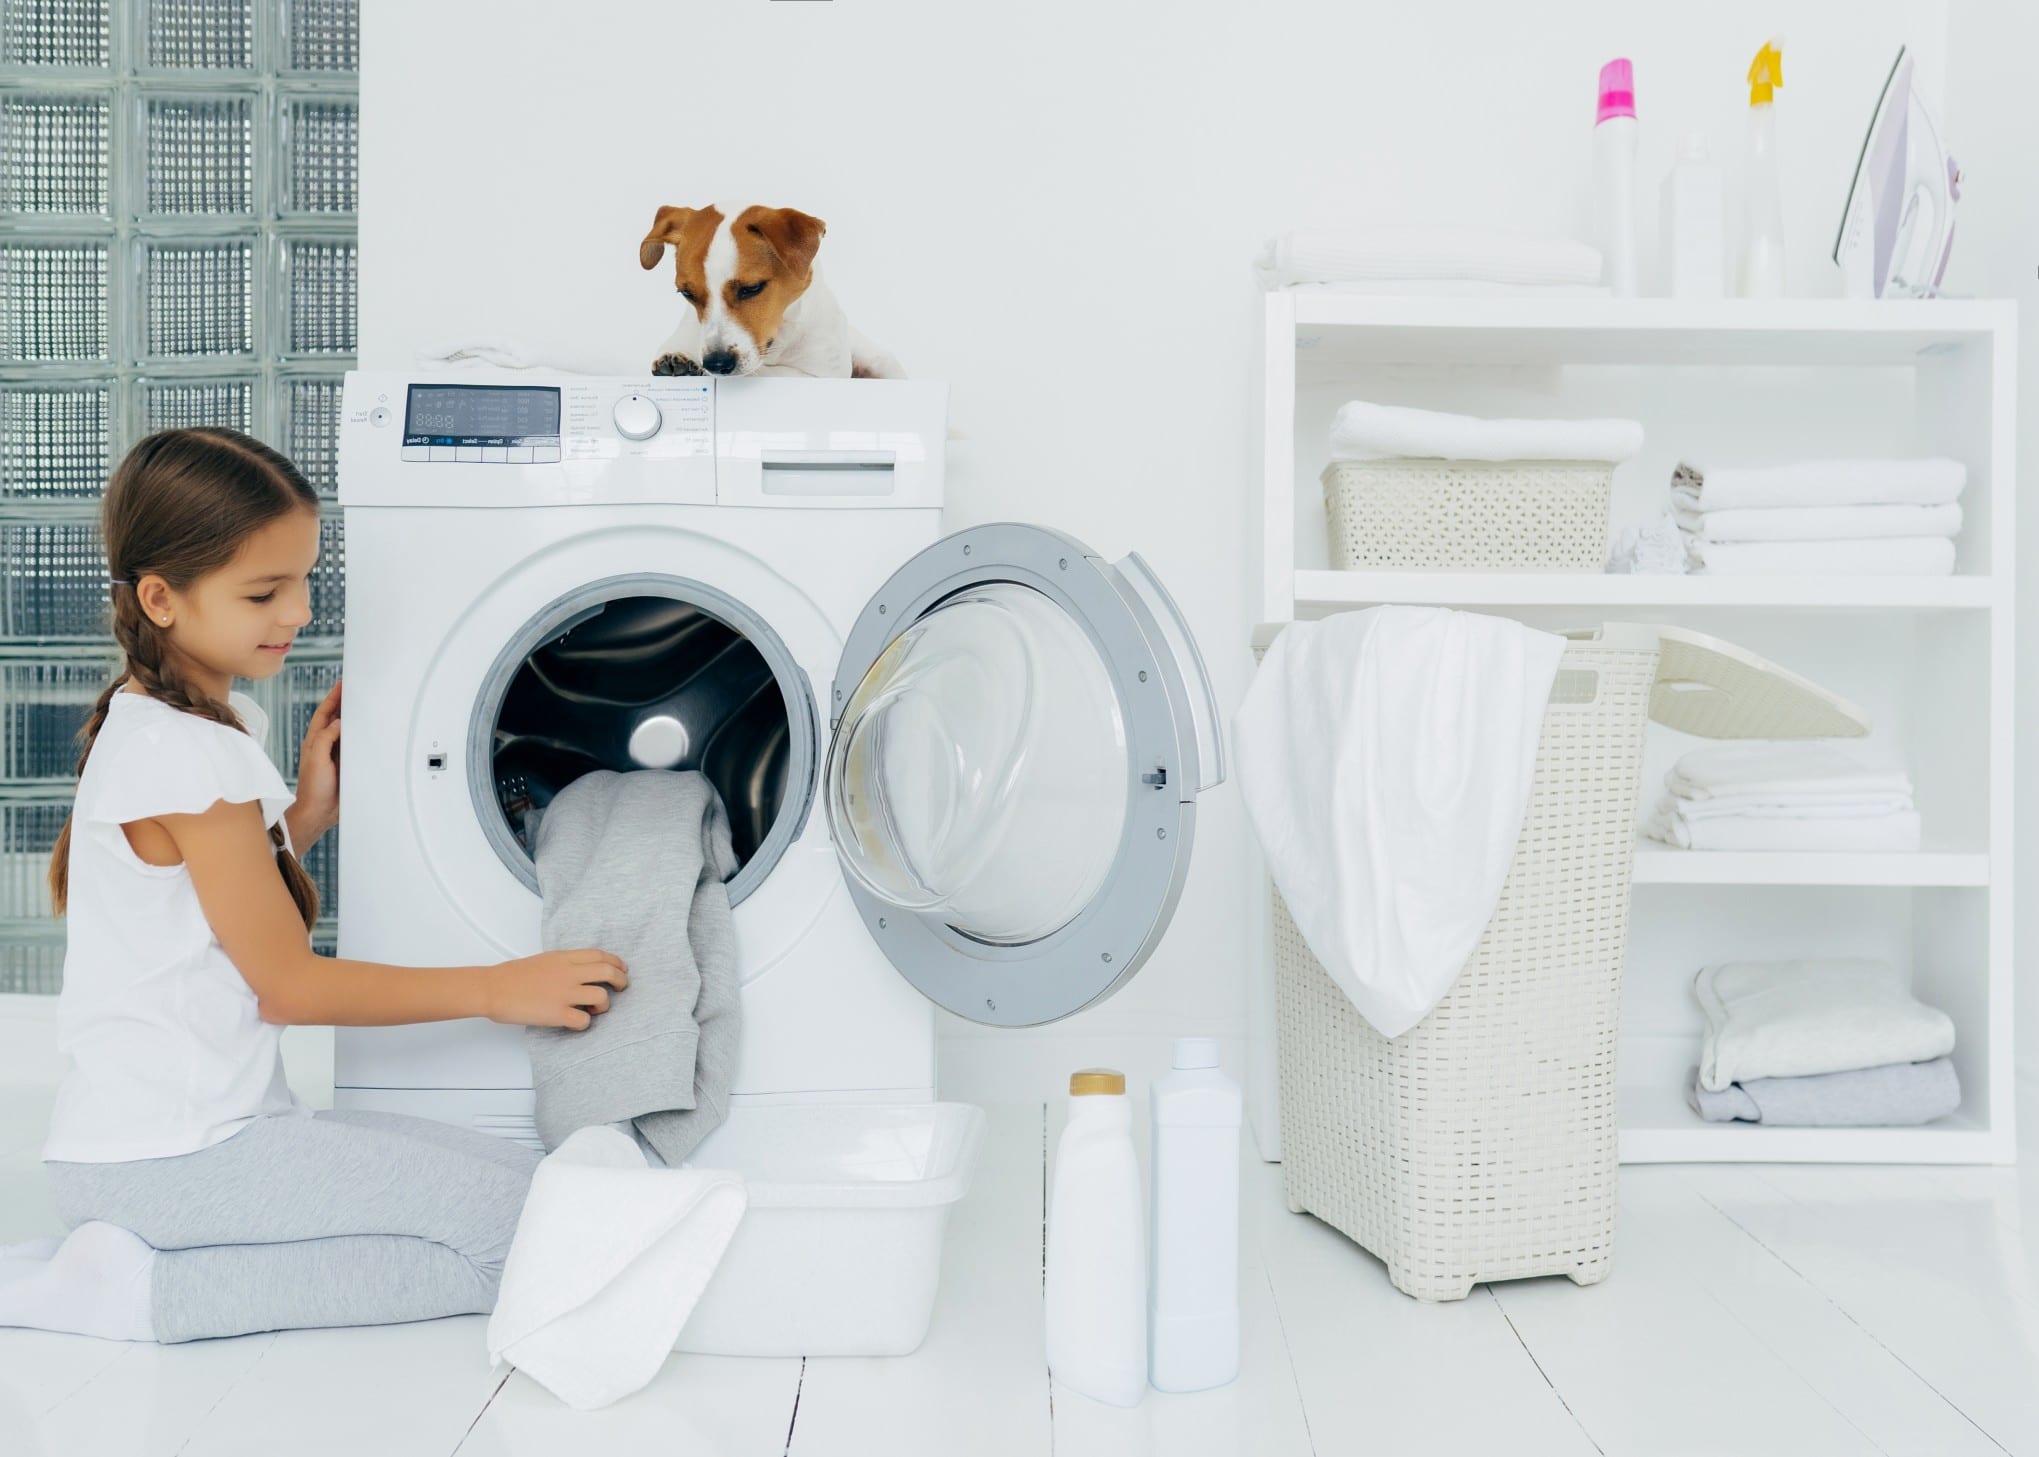 Eine Waschmaschine anschließen ist weitaus einfacher als viele Menschen denken. Foto vkstudio via Twenty20